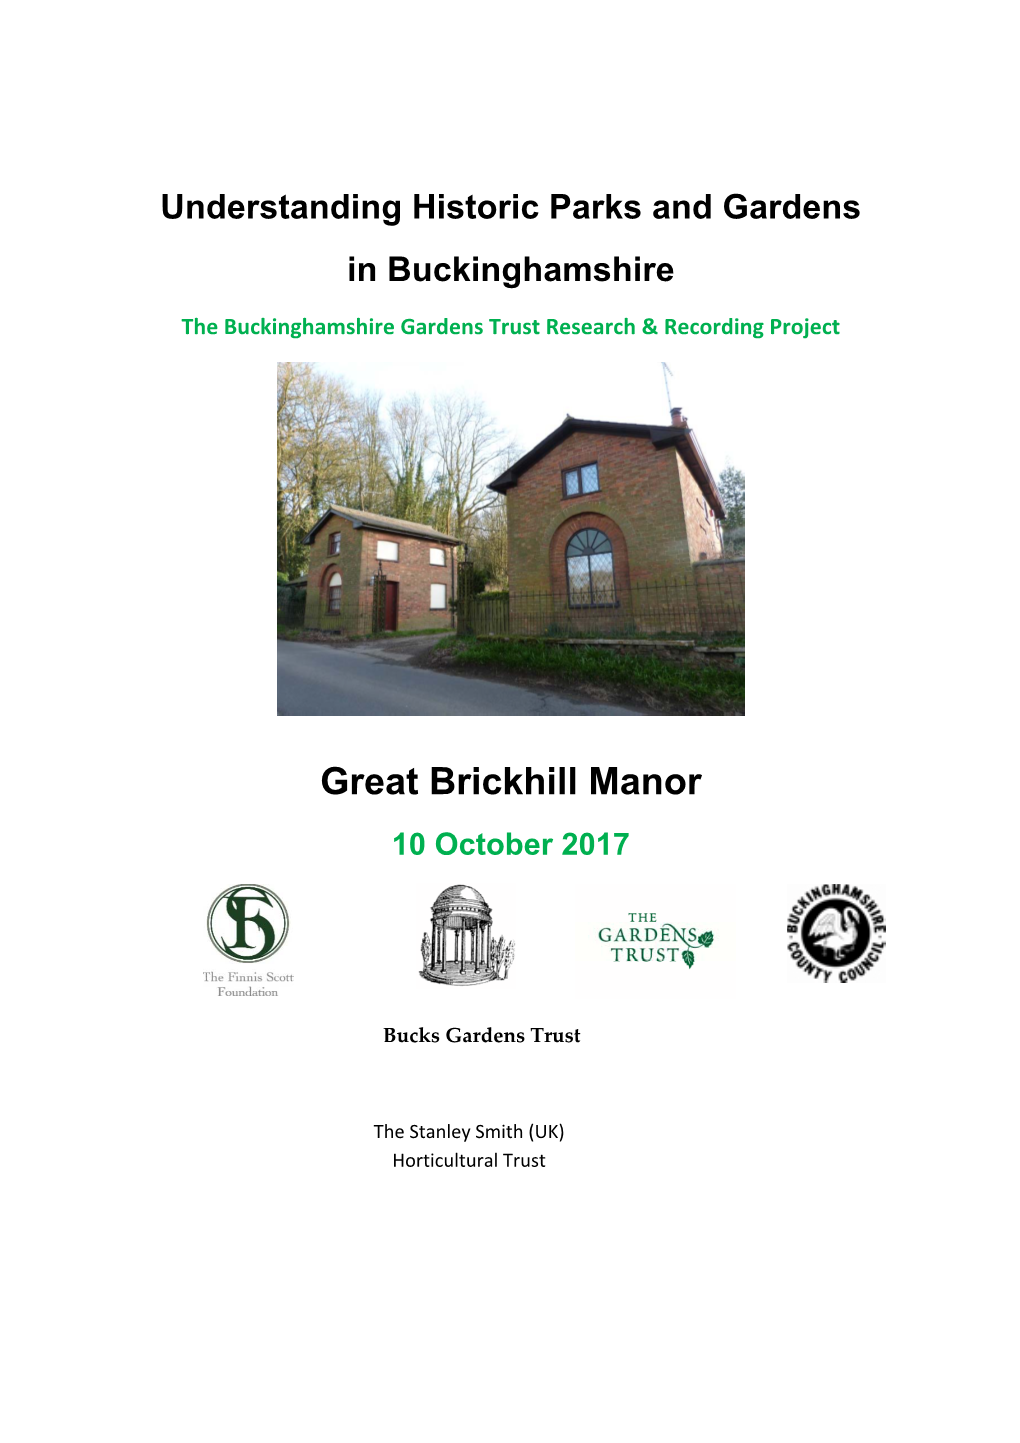 Great Brickhill Manor 10 October 2017